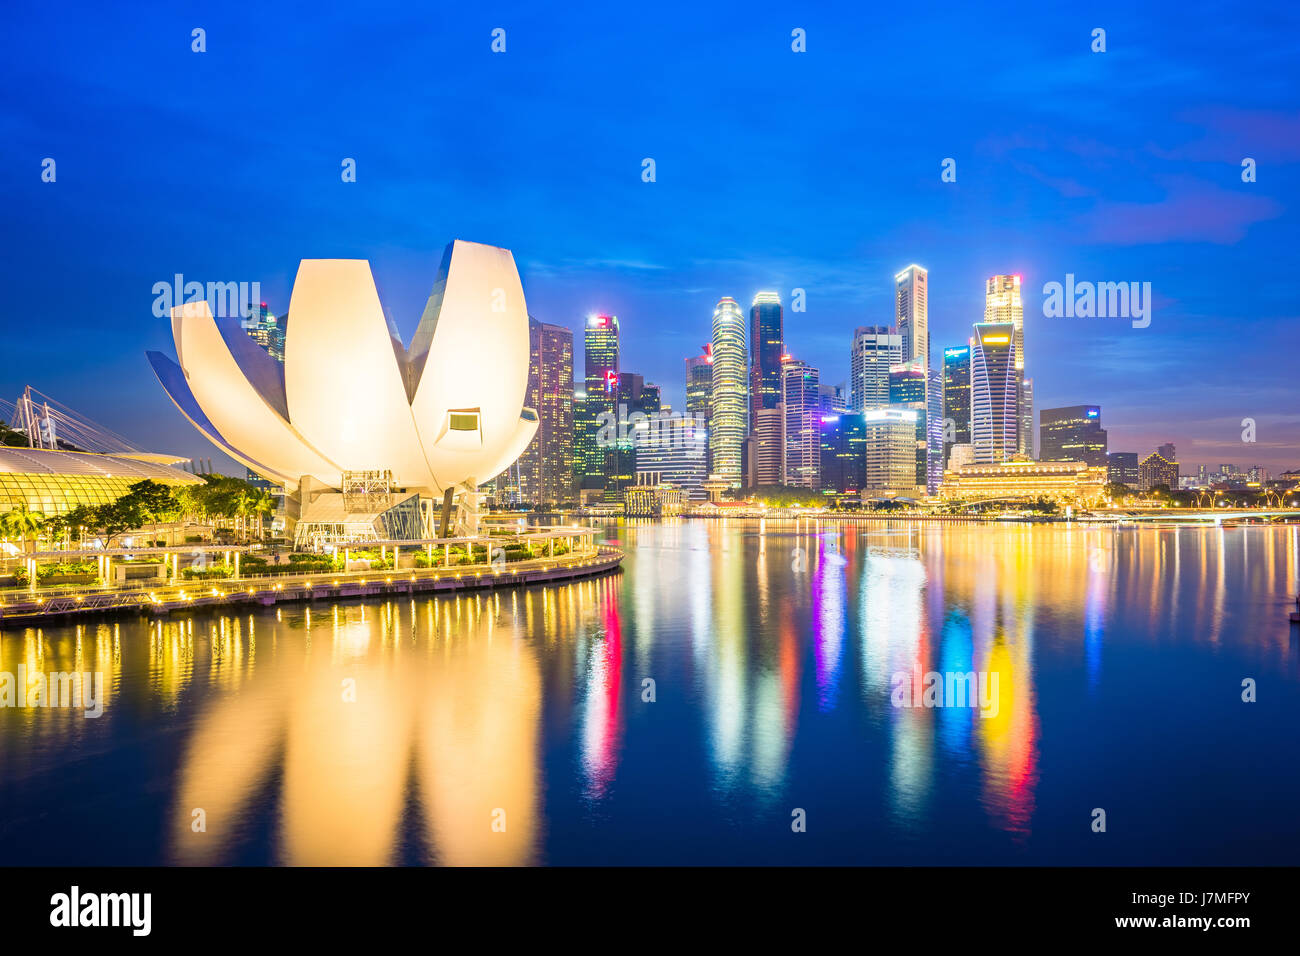 Singapore skyline, view of Singapore city at night. Stock Photo